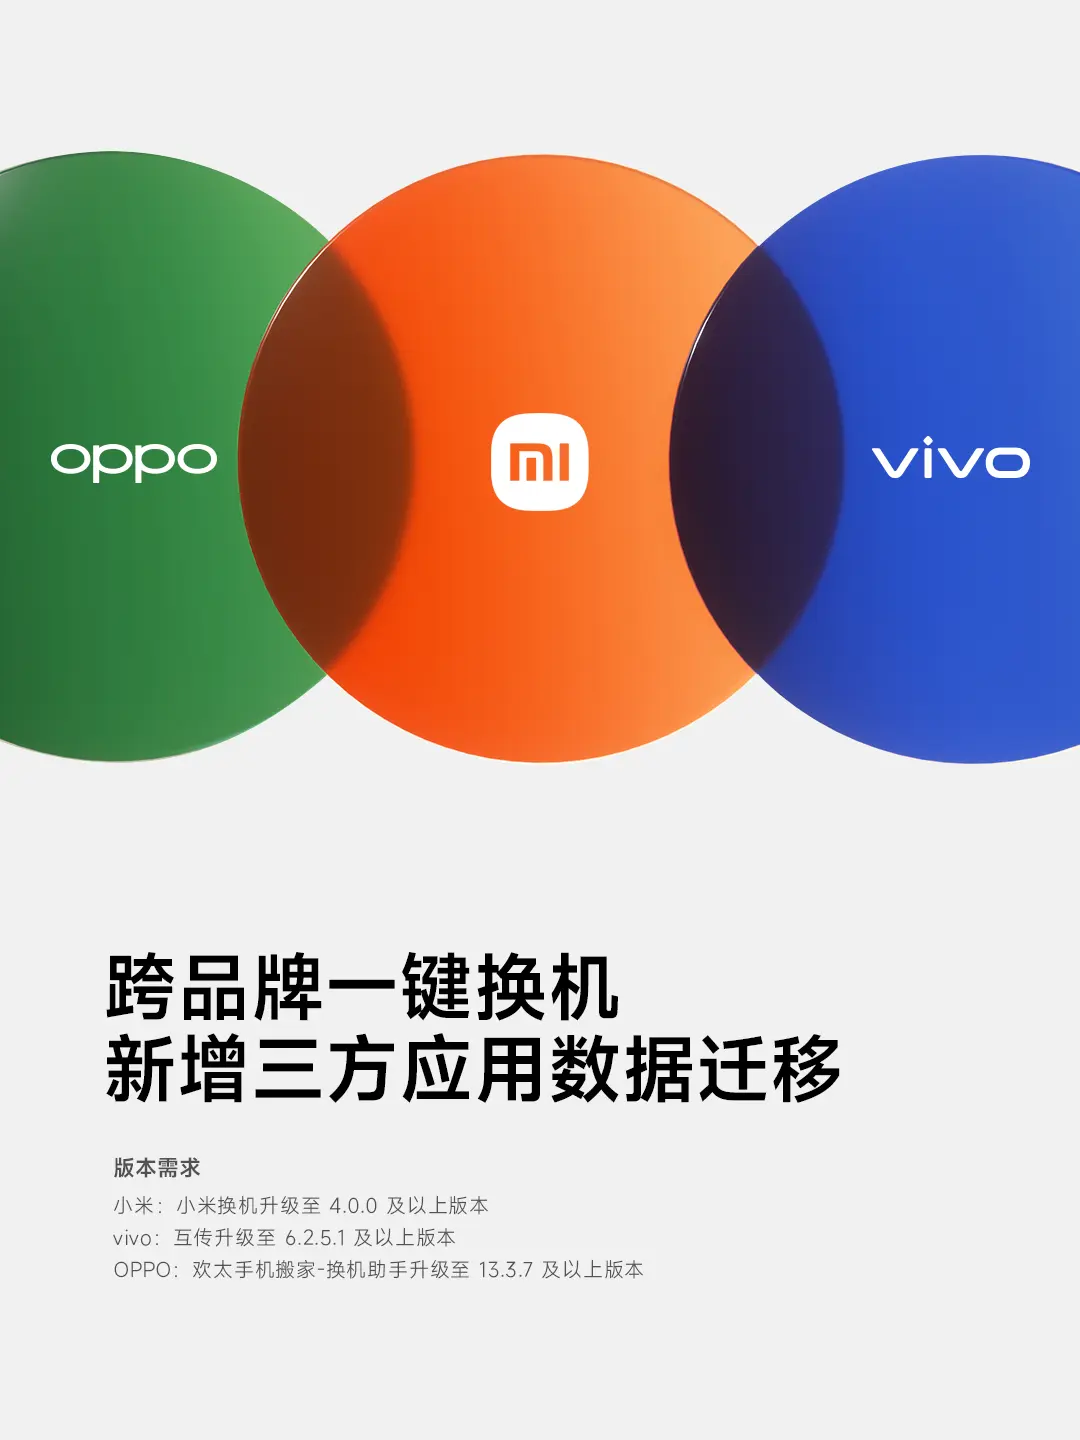 OPPO, vivo és a Xiaomi: egykattintásos adatmigráció egymásközt